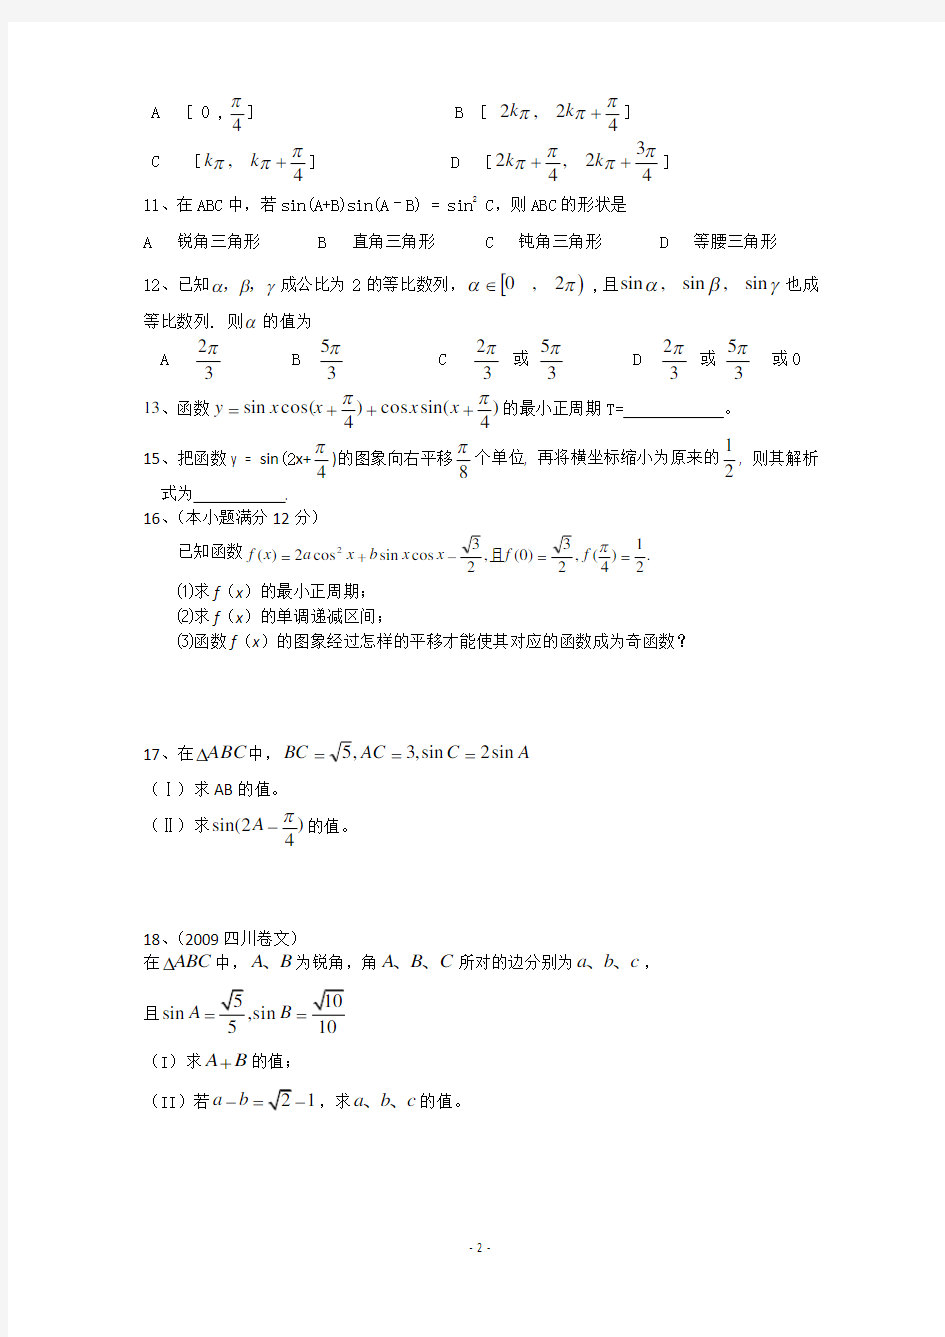 (完整版)高中文科数学三角函数练习题(附答案)